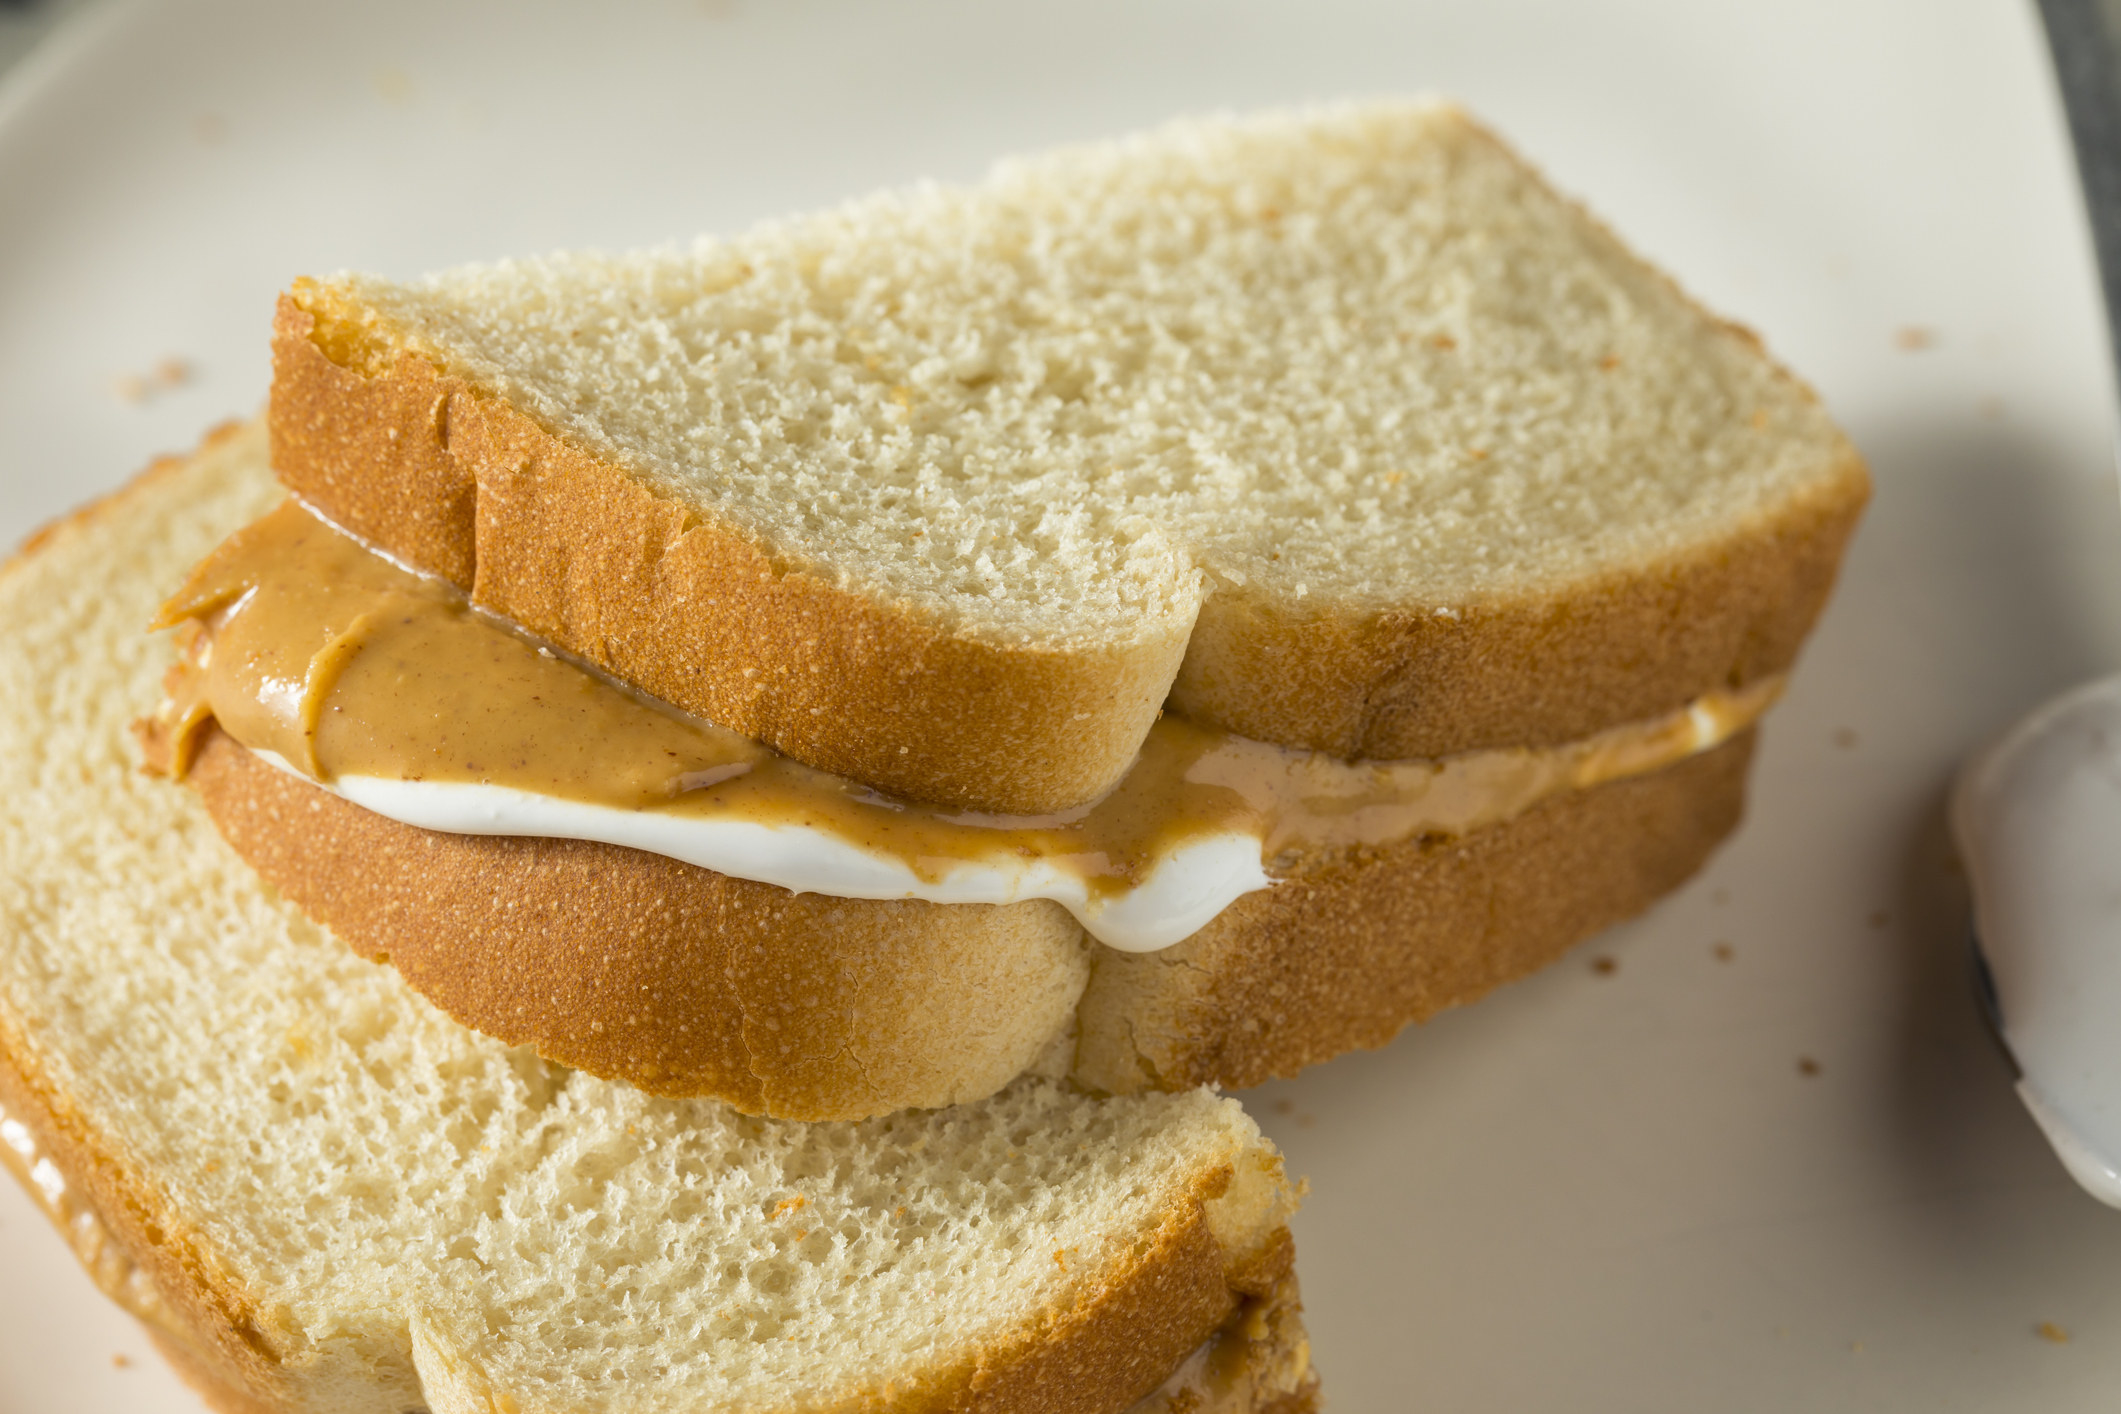 Homemade Fluffernutter Marshmallow Peanut Butter Sandwich.